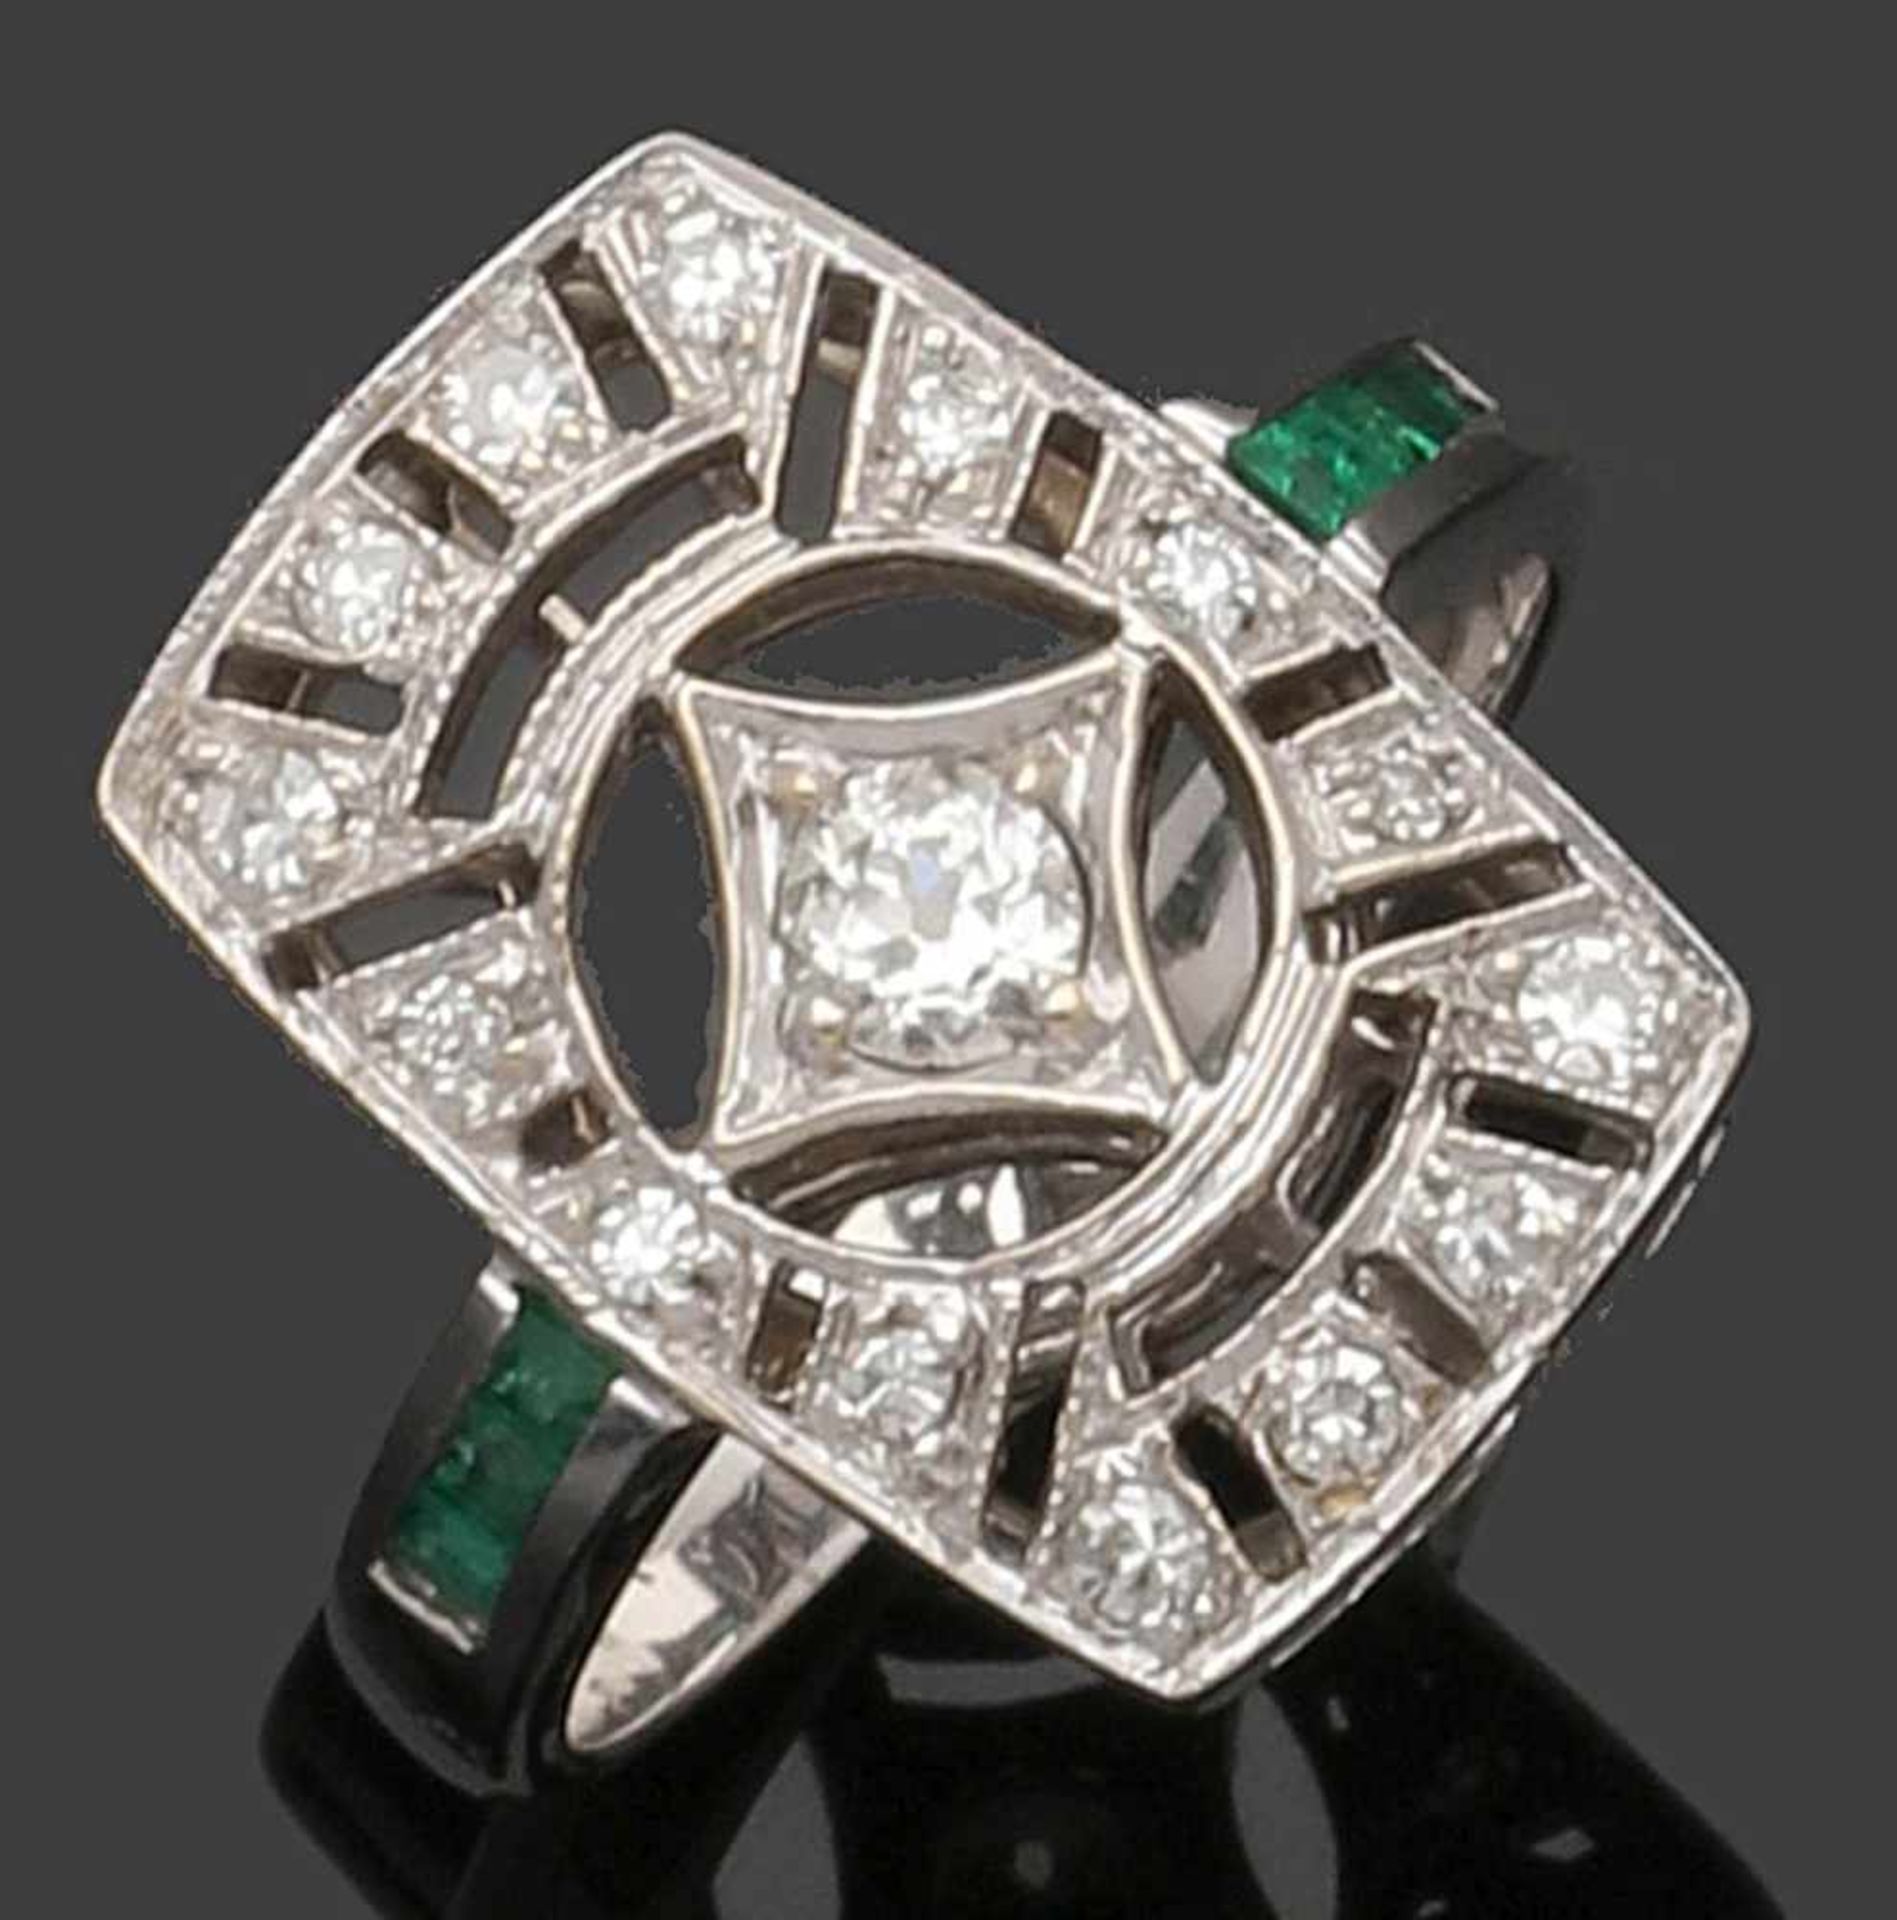 Damendiamantring im Art Déco-Stil A Lady's art nouveau-style diamond ring 750er WG, gestemp. 1